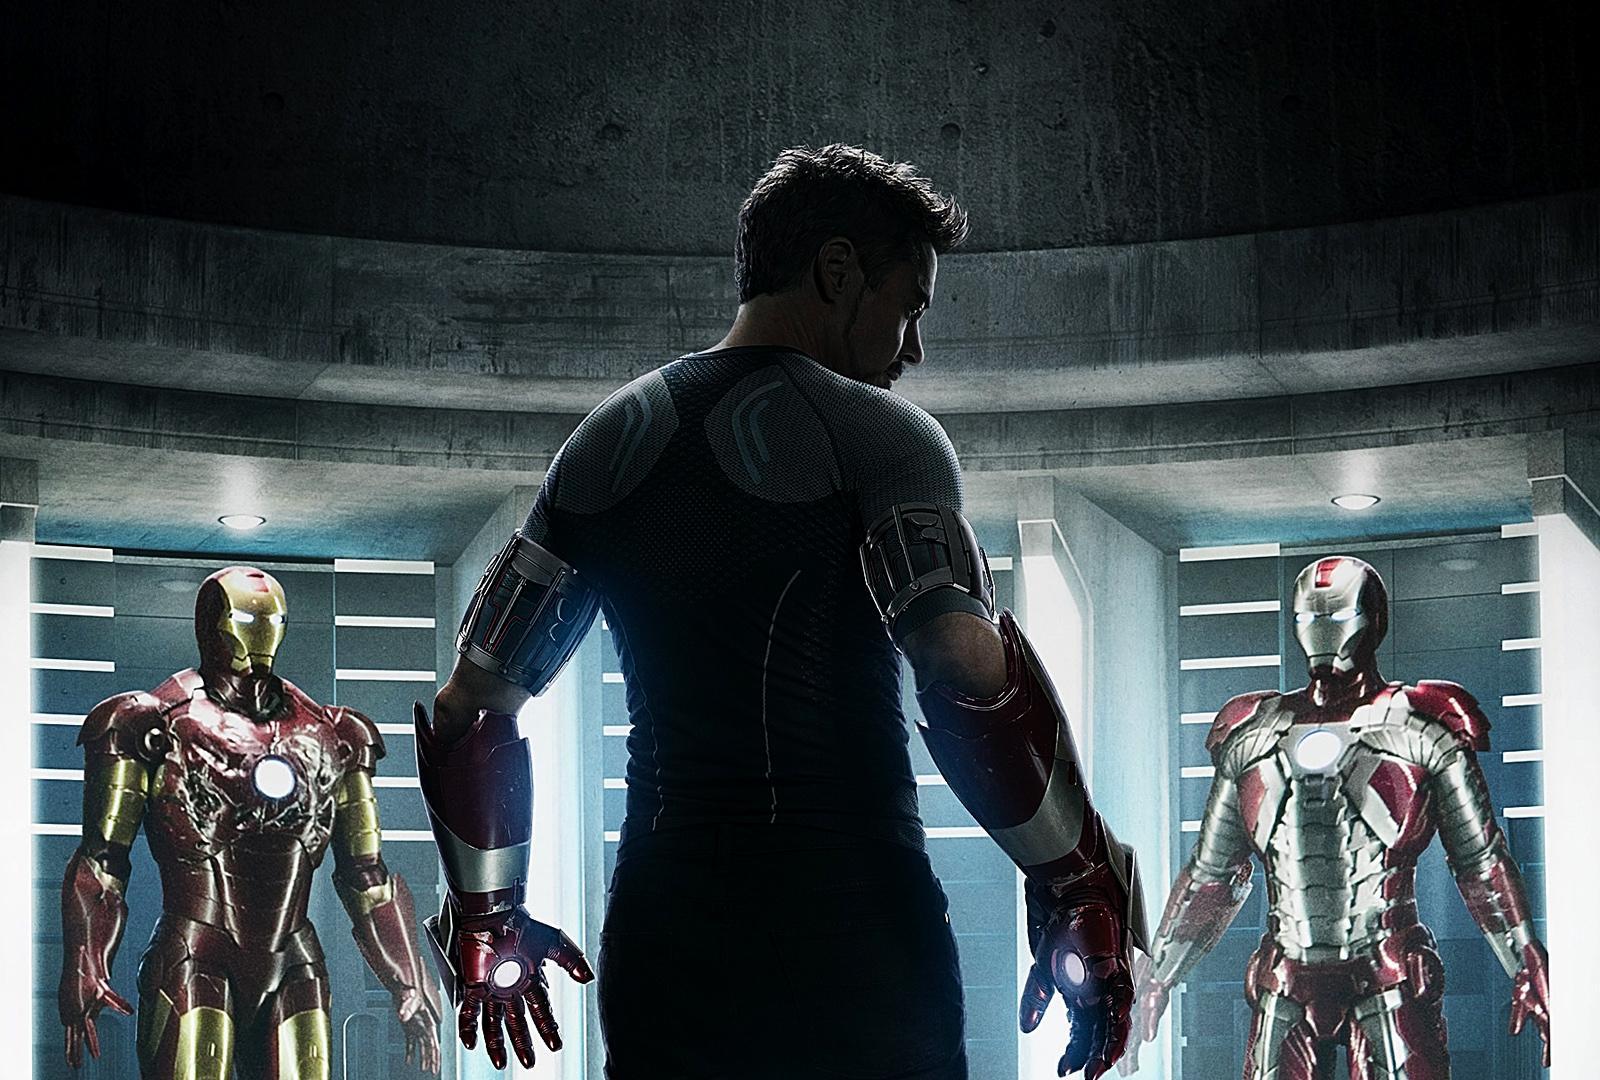 Tony Stark HD Wallpapers - Top Free Tony Stark HD Backgrounds